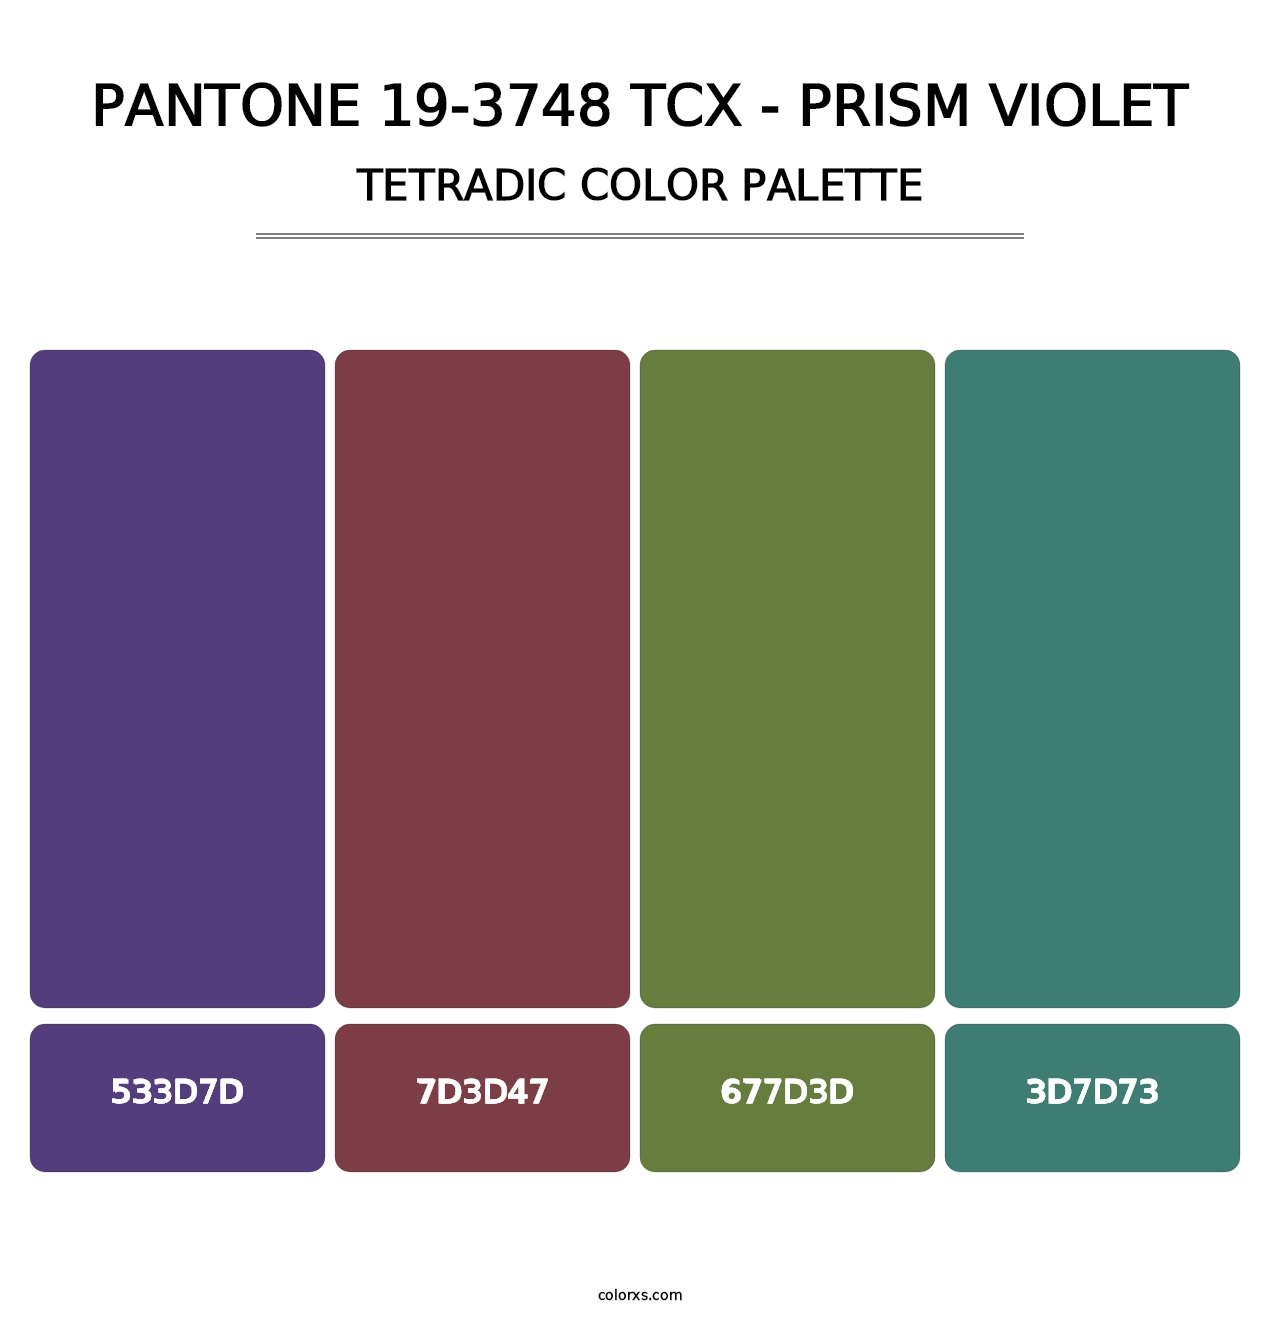 PANTONE 19-3748 TCX - Prism Violet - Tetradic Color Palette